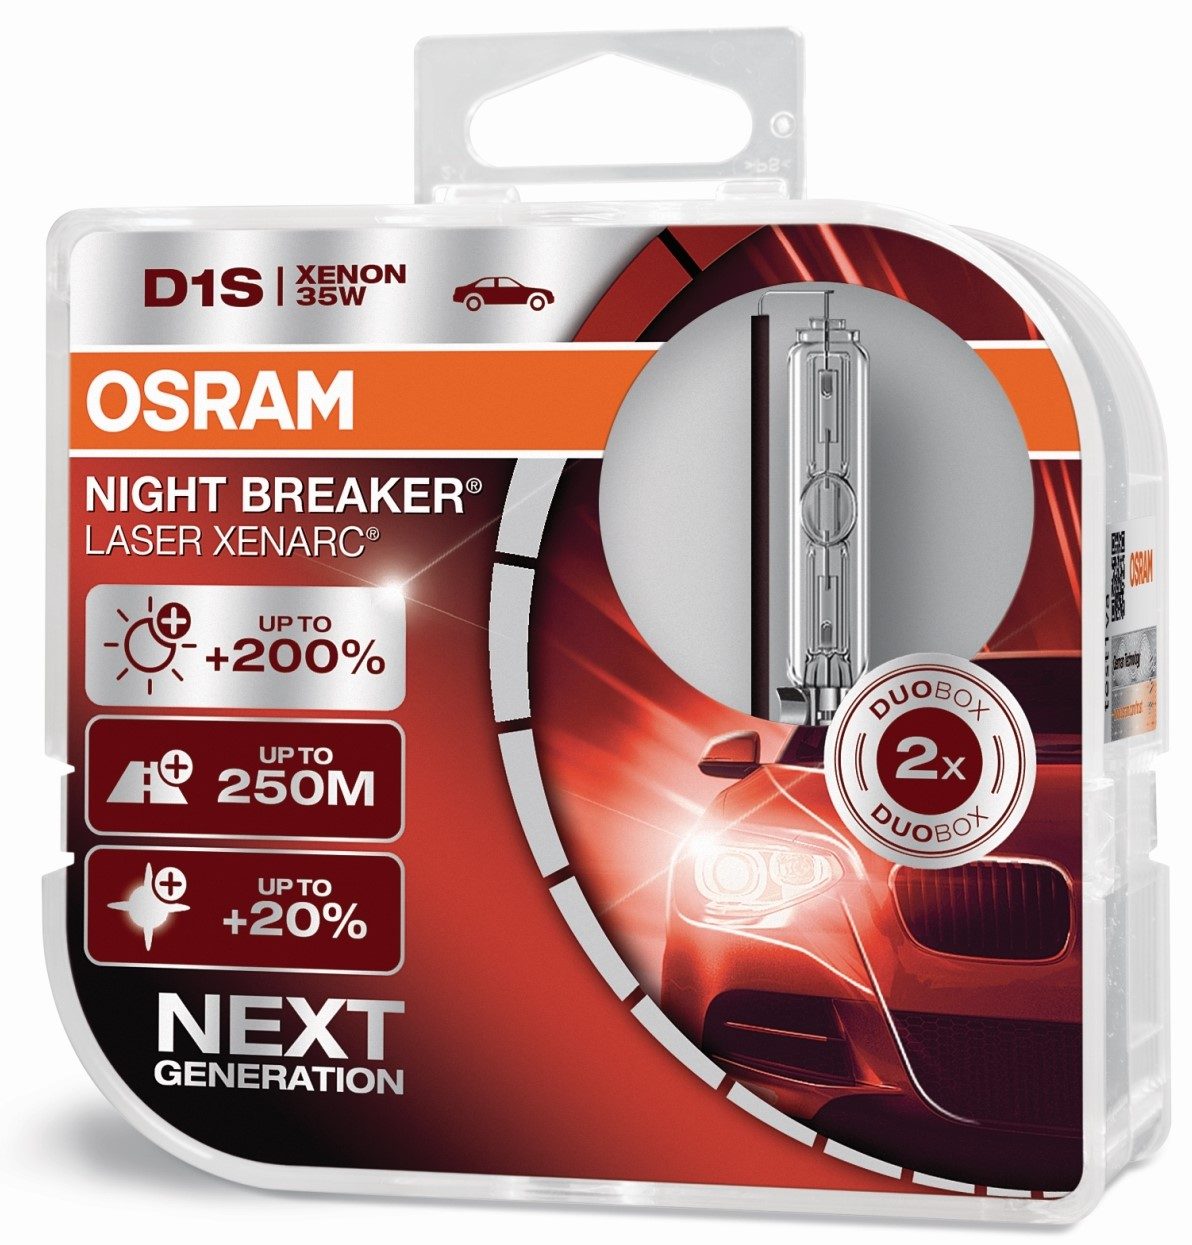 OSRAM Cool Blue Intense NextGen - HID/Xenon Replacement Bulbs